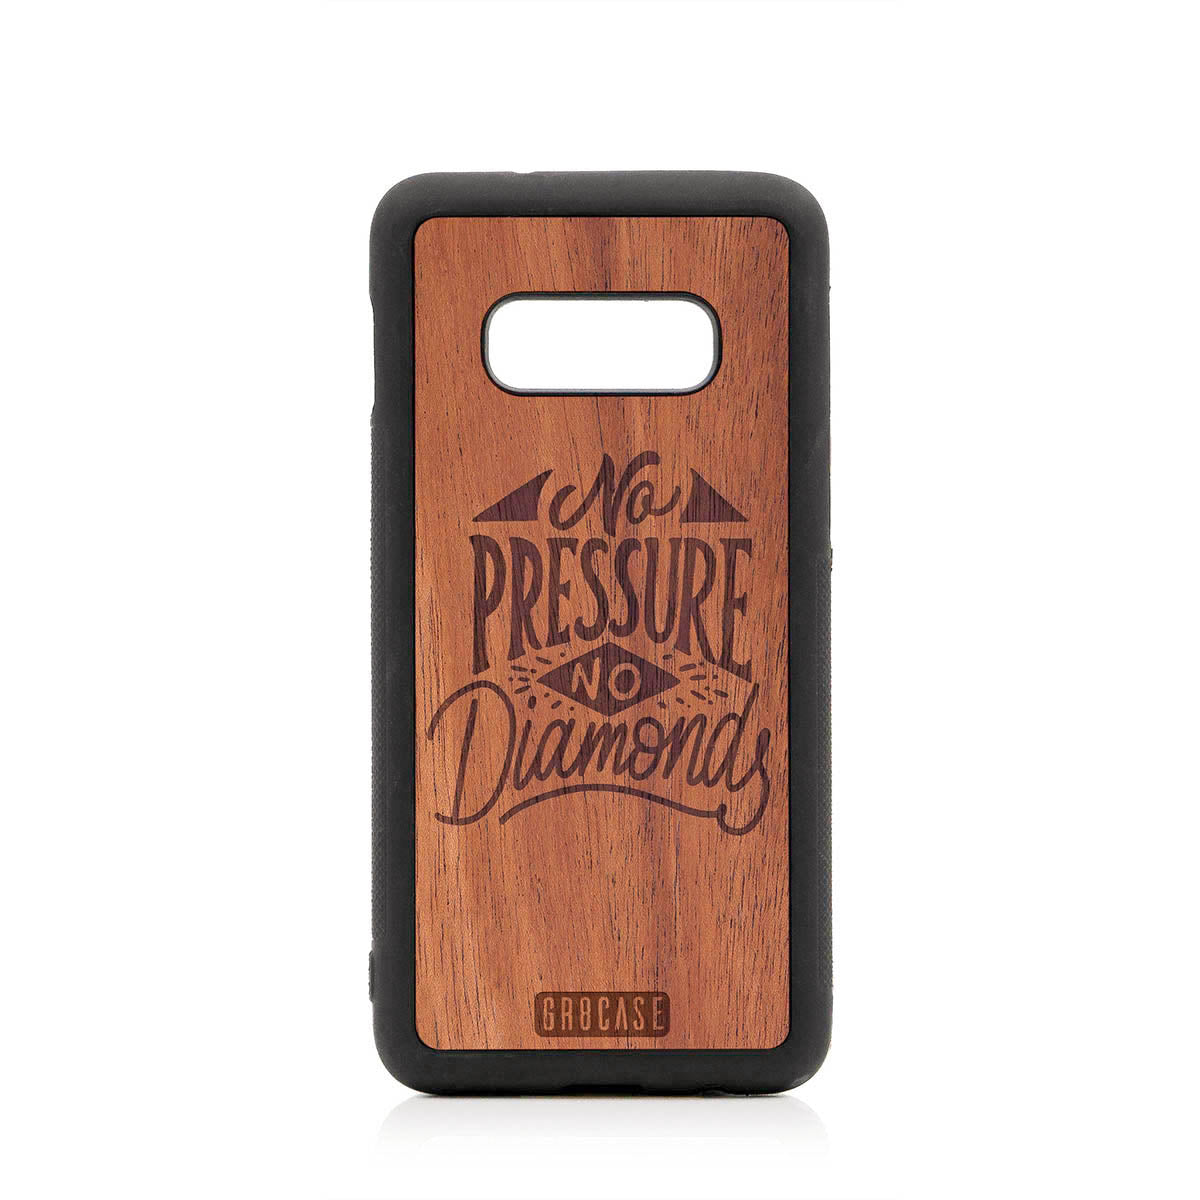 No Pressure No Diamonds Design Wood Case For Samsung Galaxy S10E